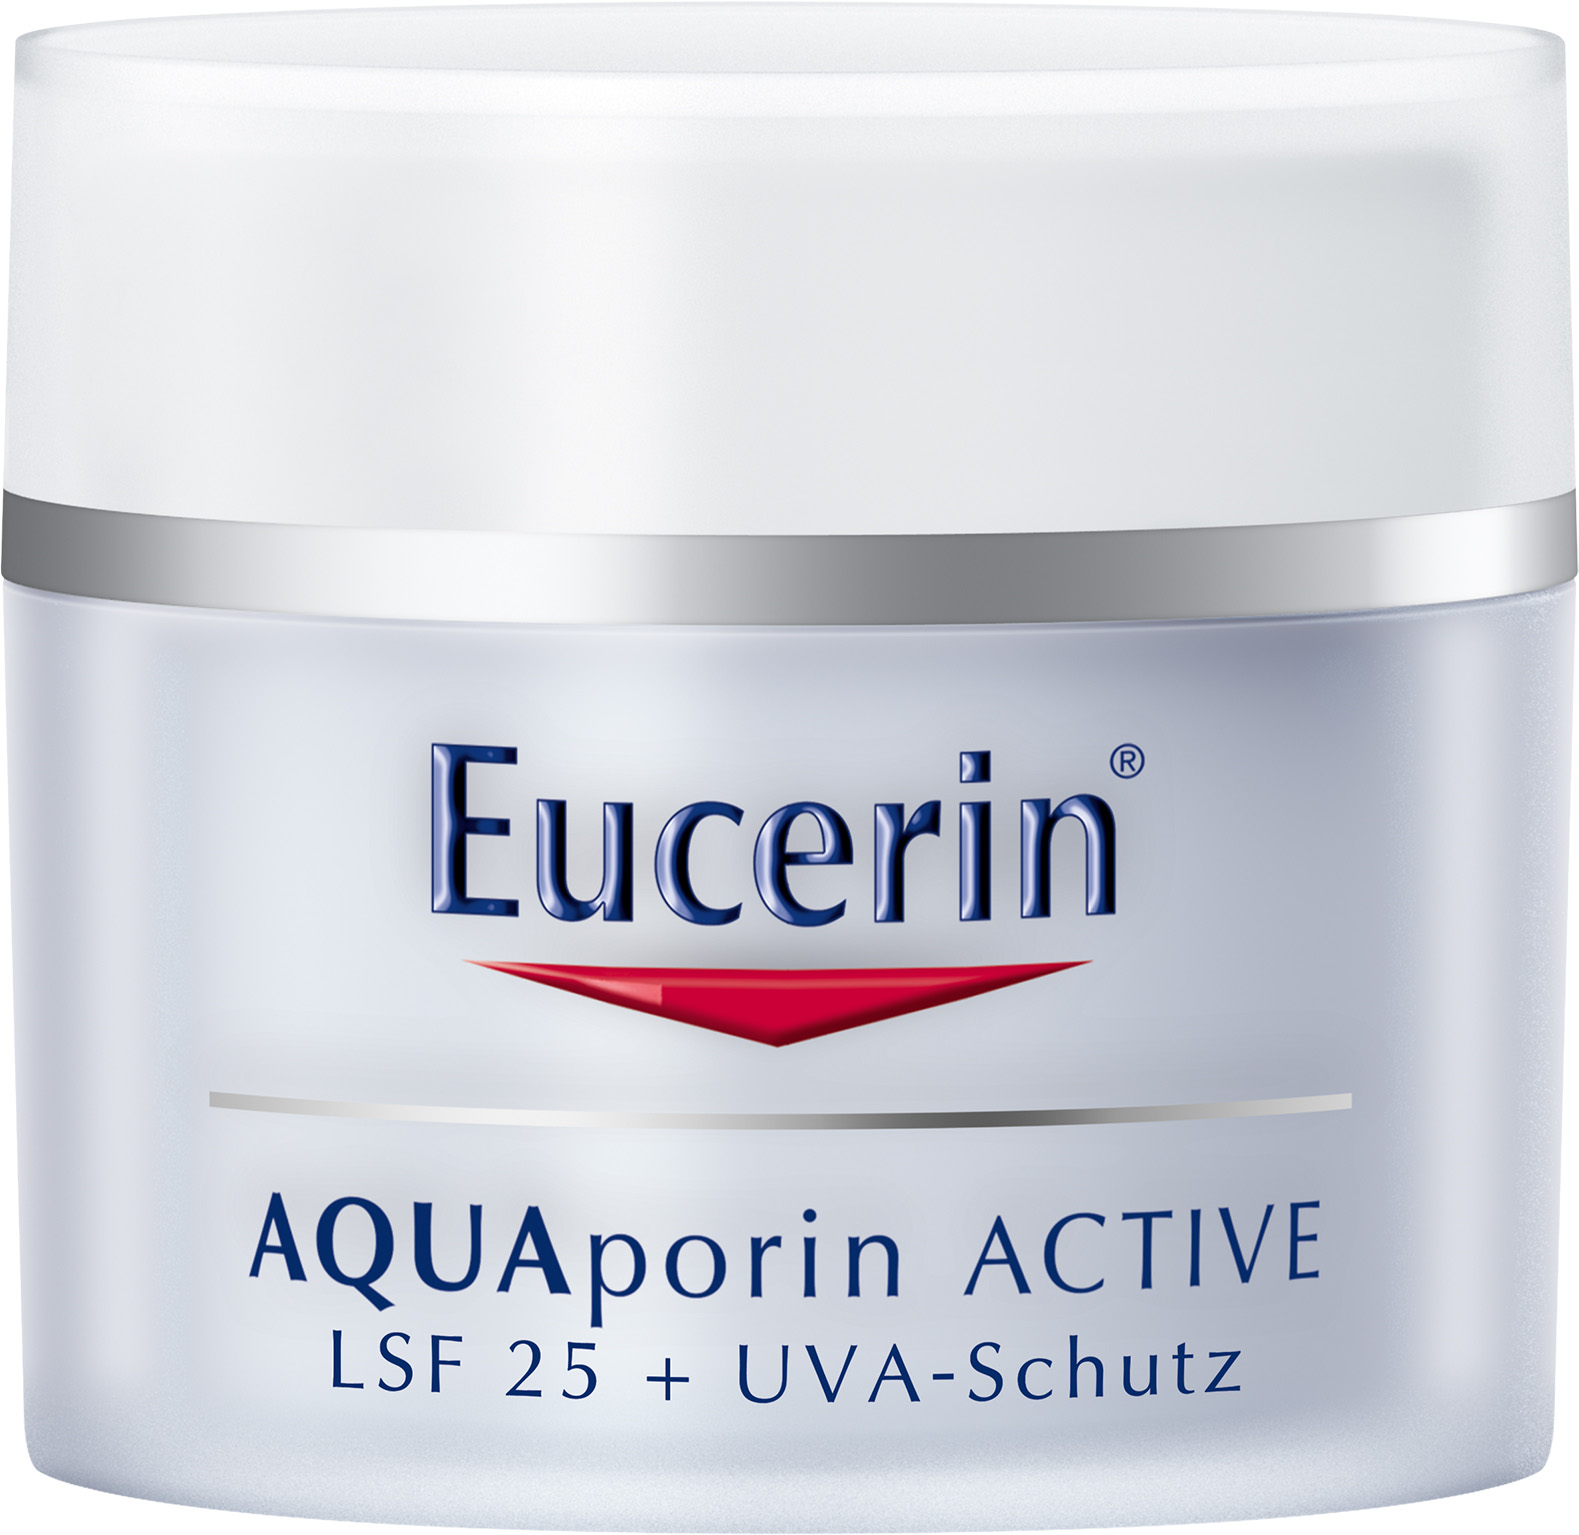 Eucerin AQUAporin ACTIVE LSF 25 + UVA-Schutz Für alle Hauttypen 50 ml PZN 10961404 UVP 19,50 Euro O/W Emulsion für die feuchtigkeitsarme, empfindliche Haut (alle Hauttypen) Mit UVA-/UVB-Schutz (gemäß